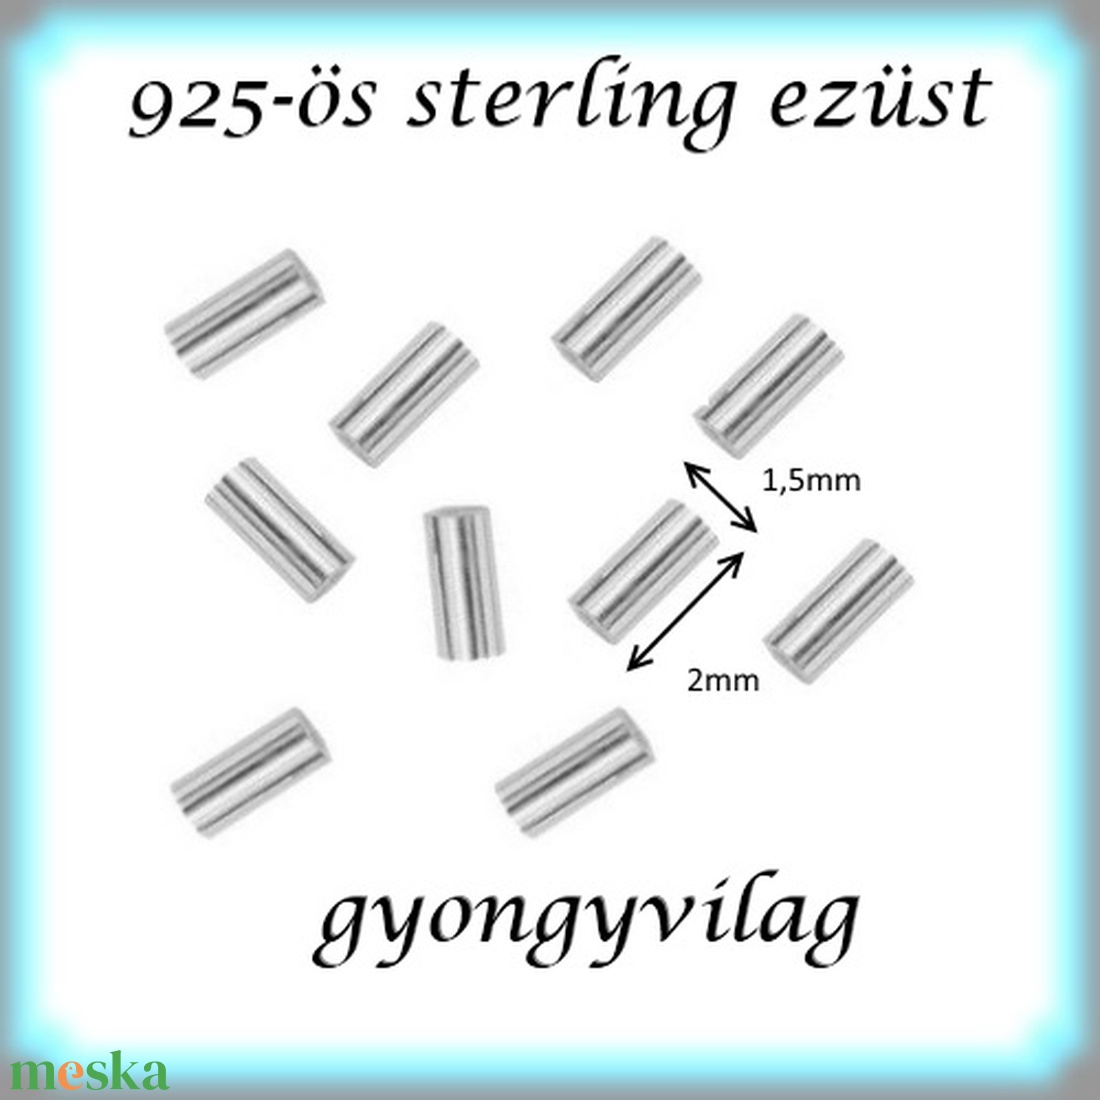 925-ös ezüst köztes / gyöngy / dísz EKÖ 19 1,5x2x0,25  20db/cs - gyöngy, ékszerkellék - fém köztesek - Meska.hu